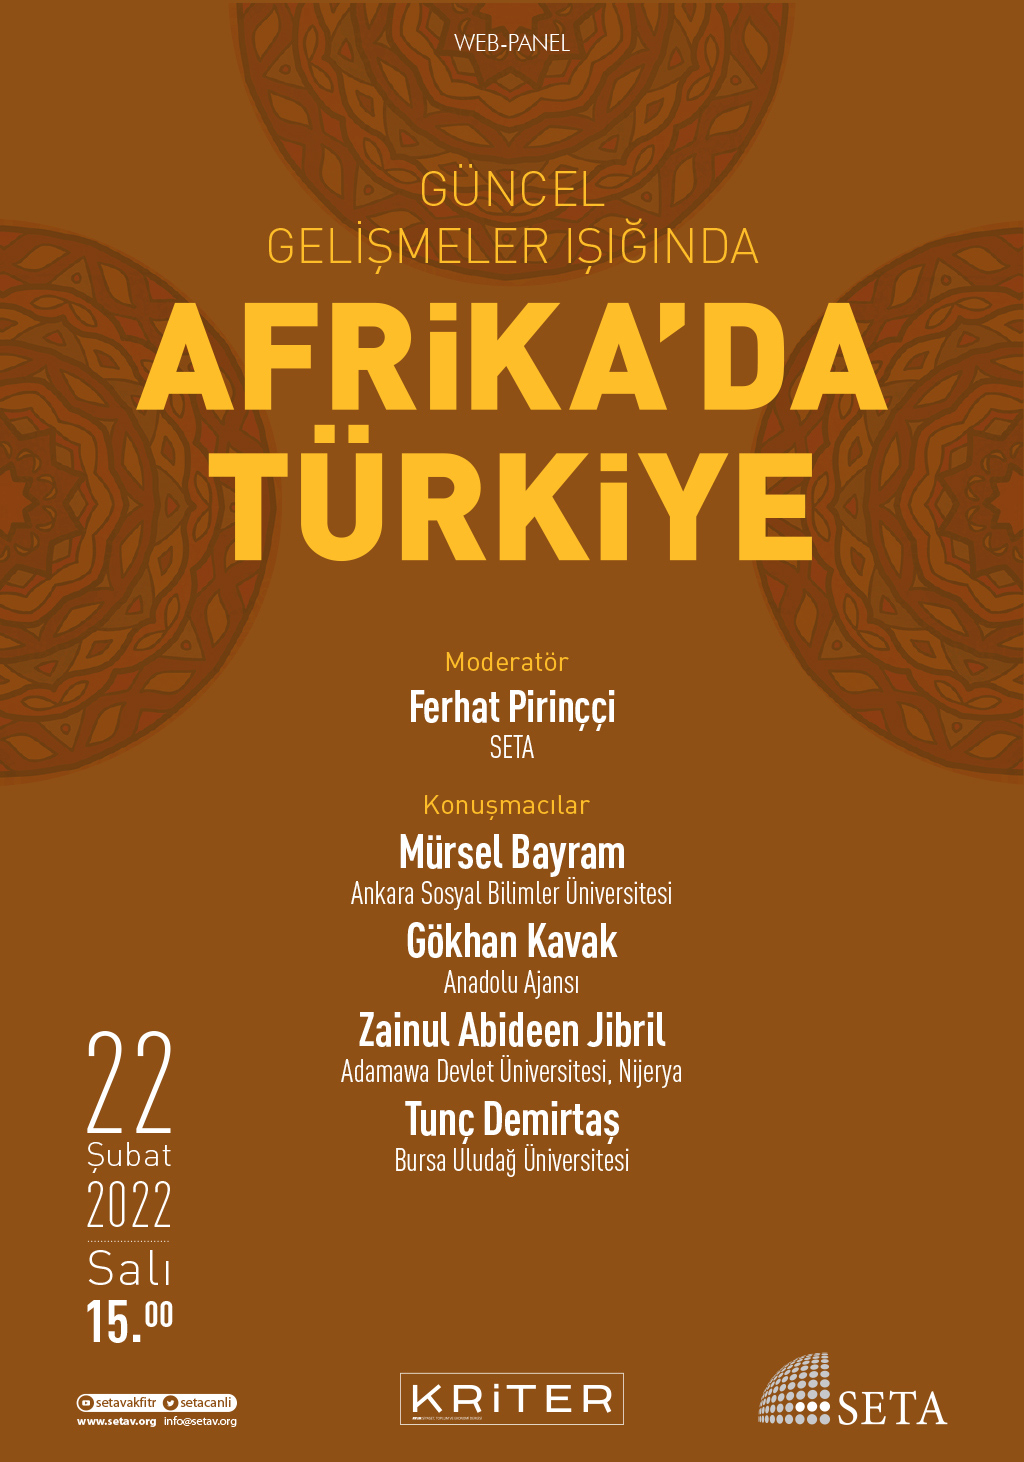 Web Panel: Güncel Gelişmeler Işığında Afrika’da Türkiye